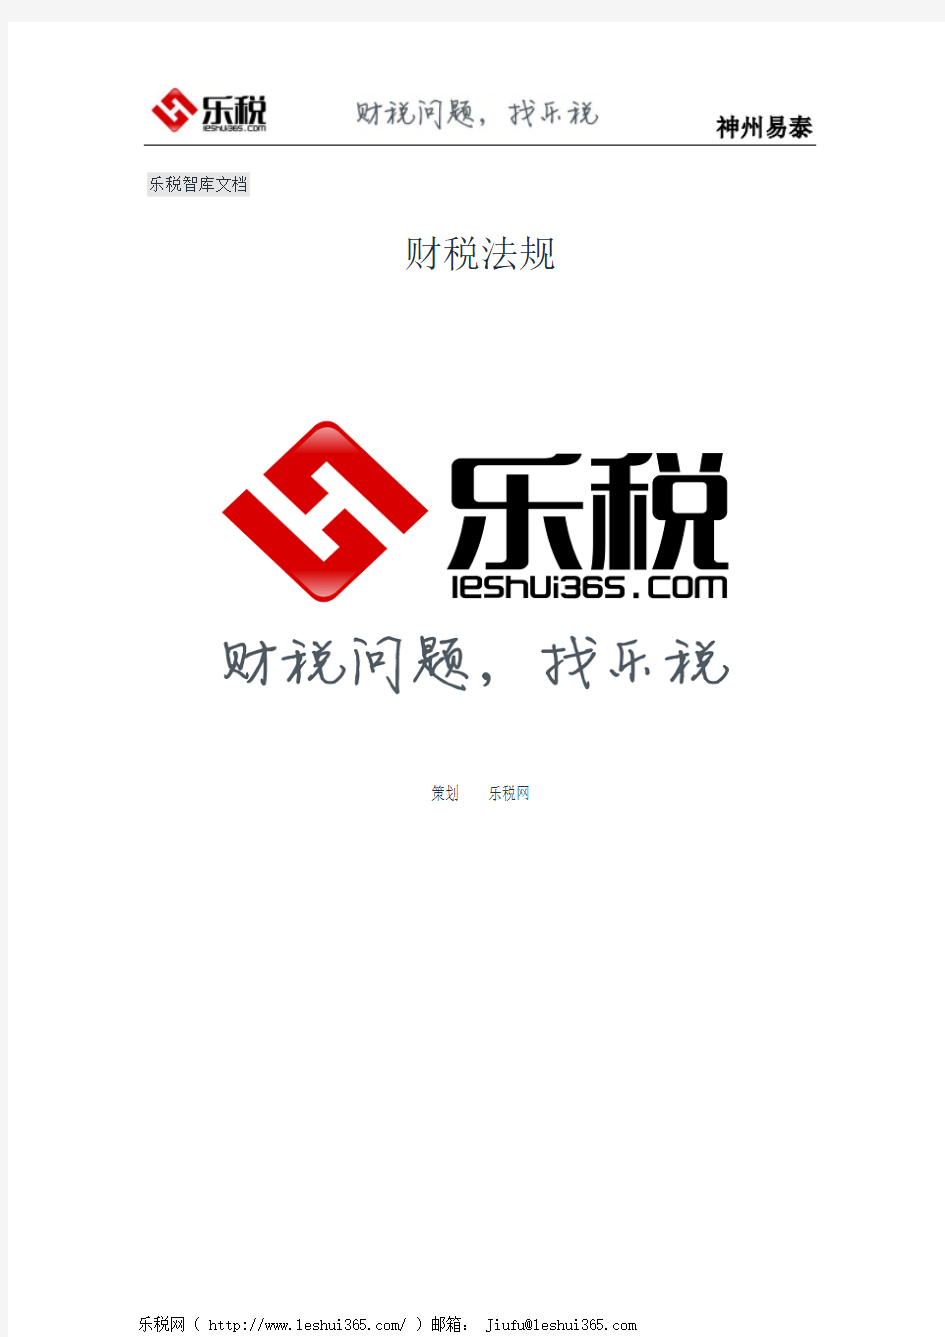 河南省地方税务局关于完善《外出经营活动税收管理证明》有关事项的公告